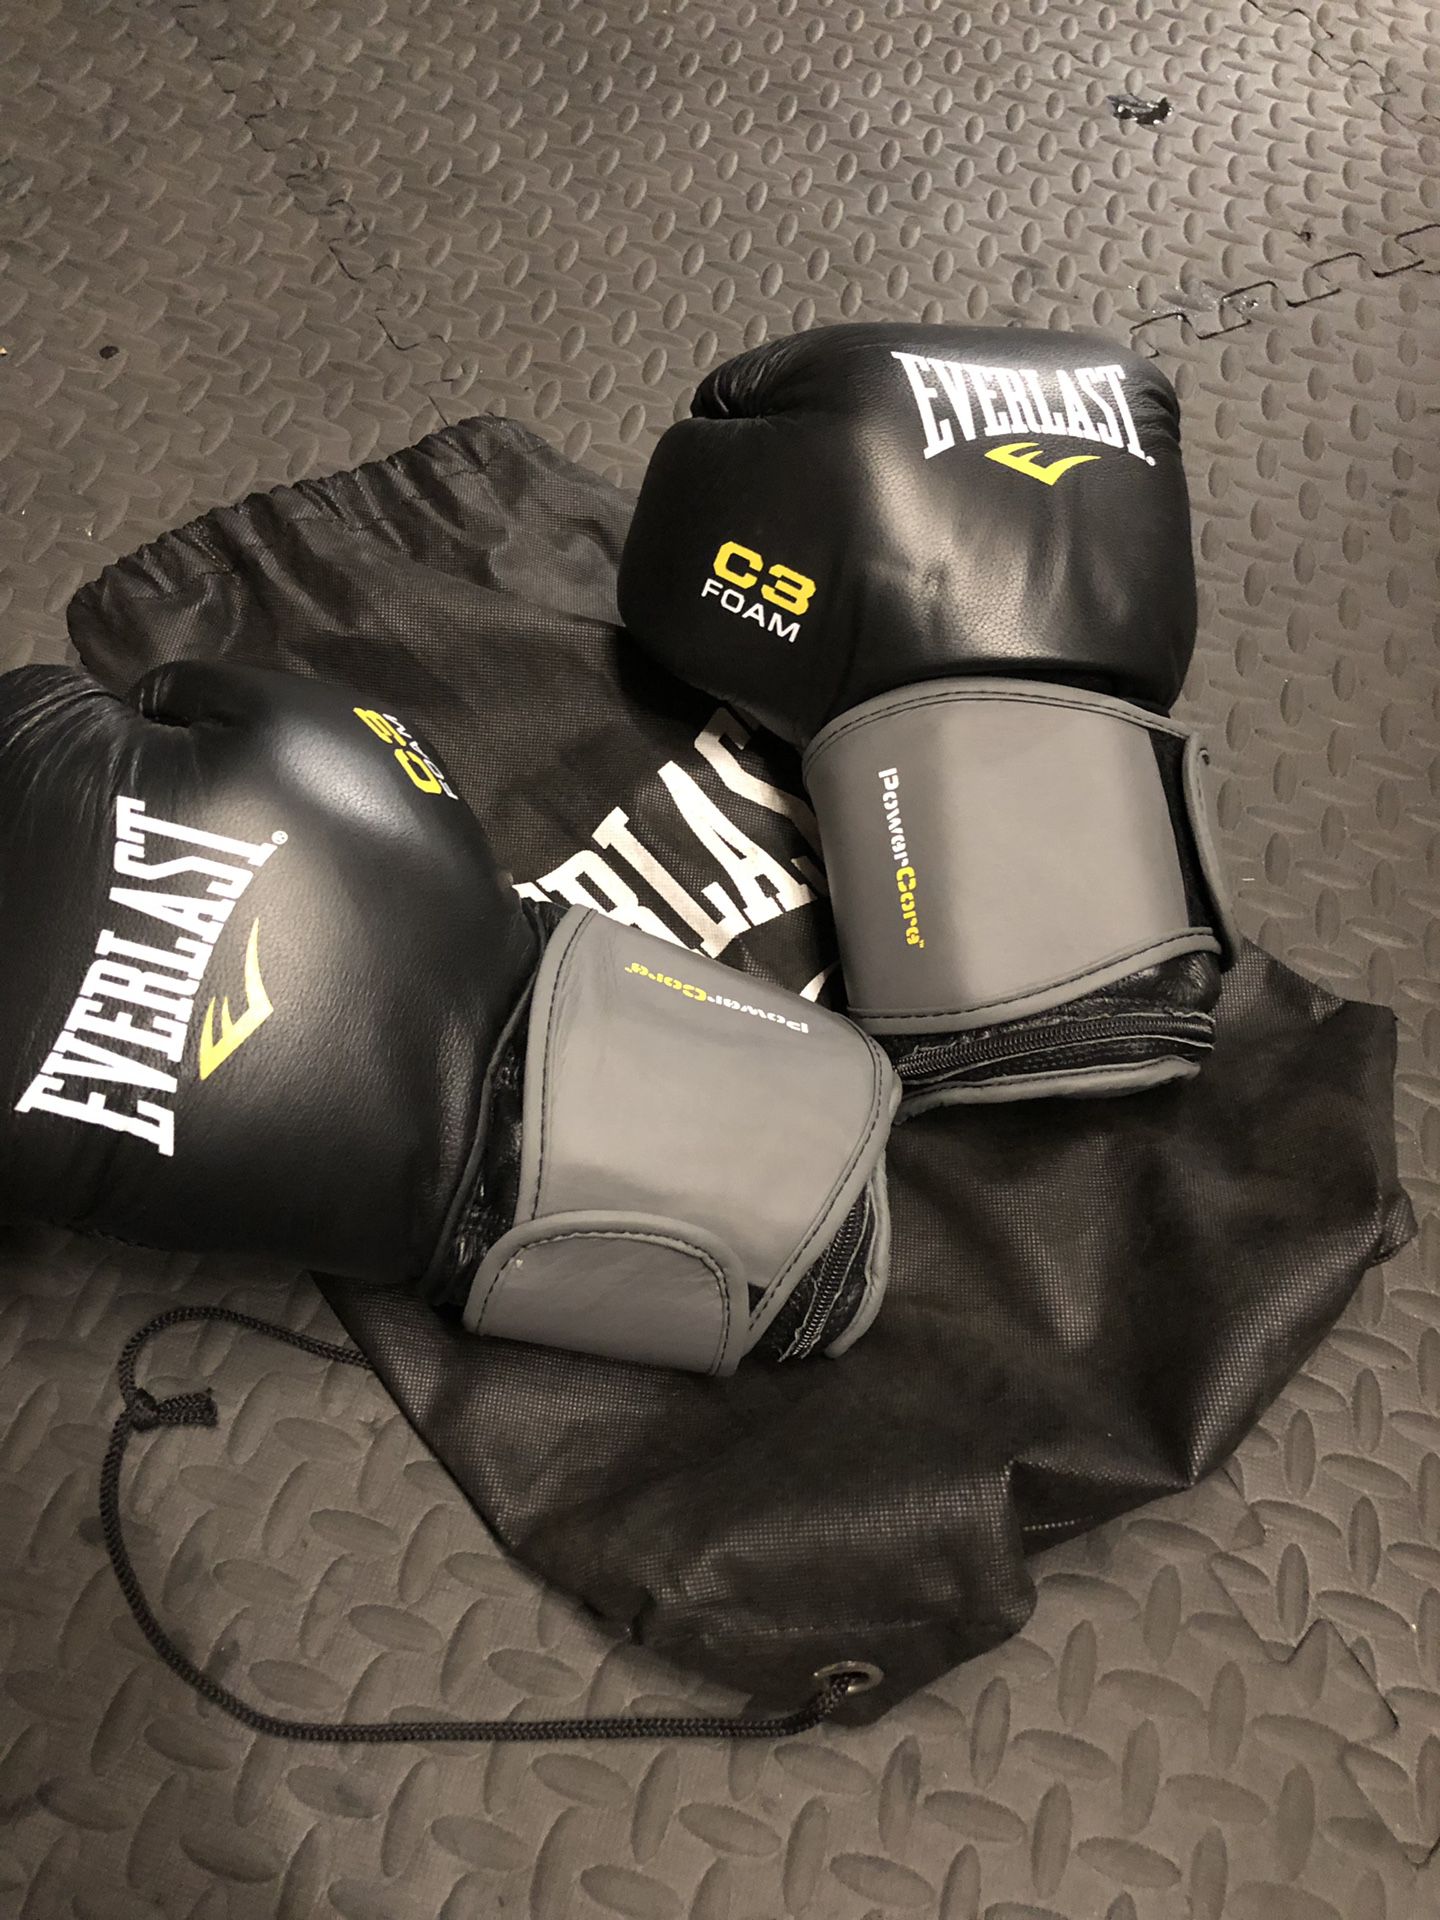 Everlast 3lb heavy bag gloves